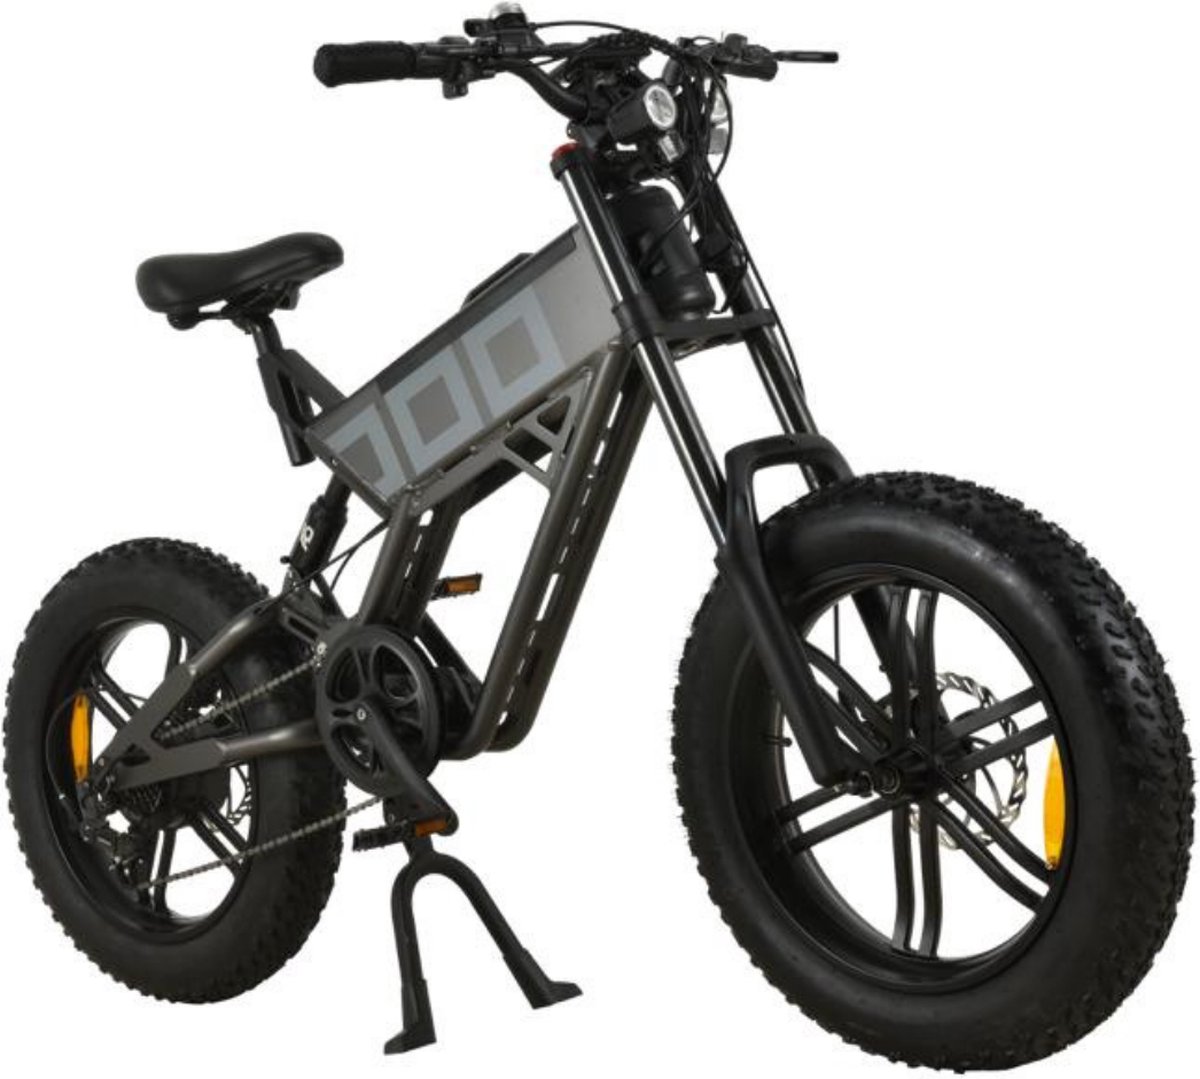 P4B - Fatbike - Elektrische Fatbike - Elektrische Fiets - Elektrische Mountainbike - E bike - Grijs - 1 jaar garantie - Legaal openbare weg